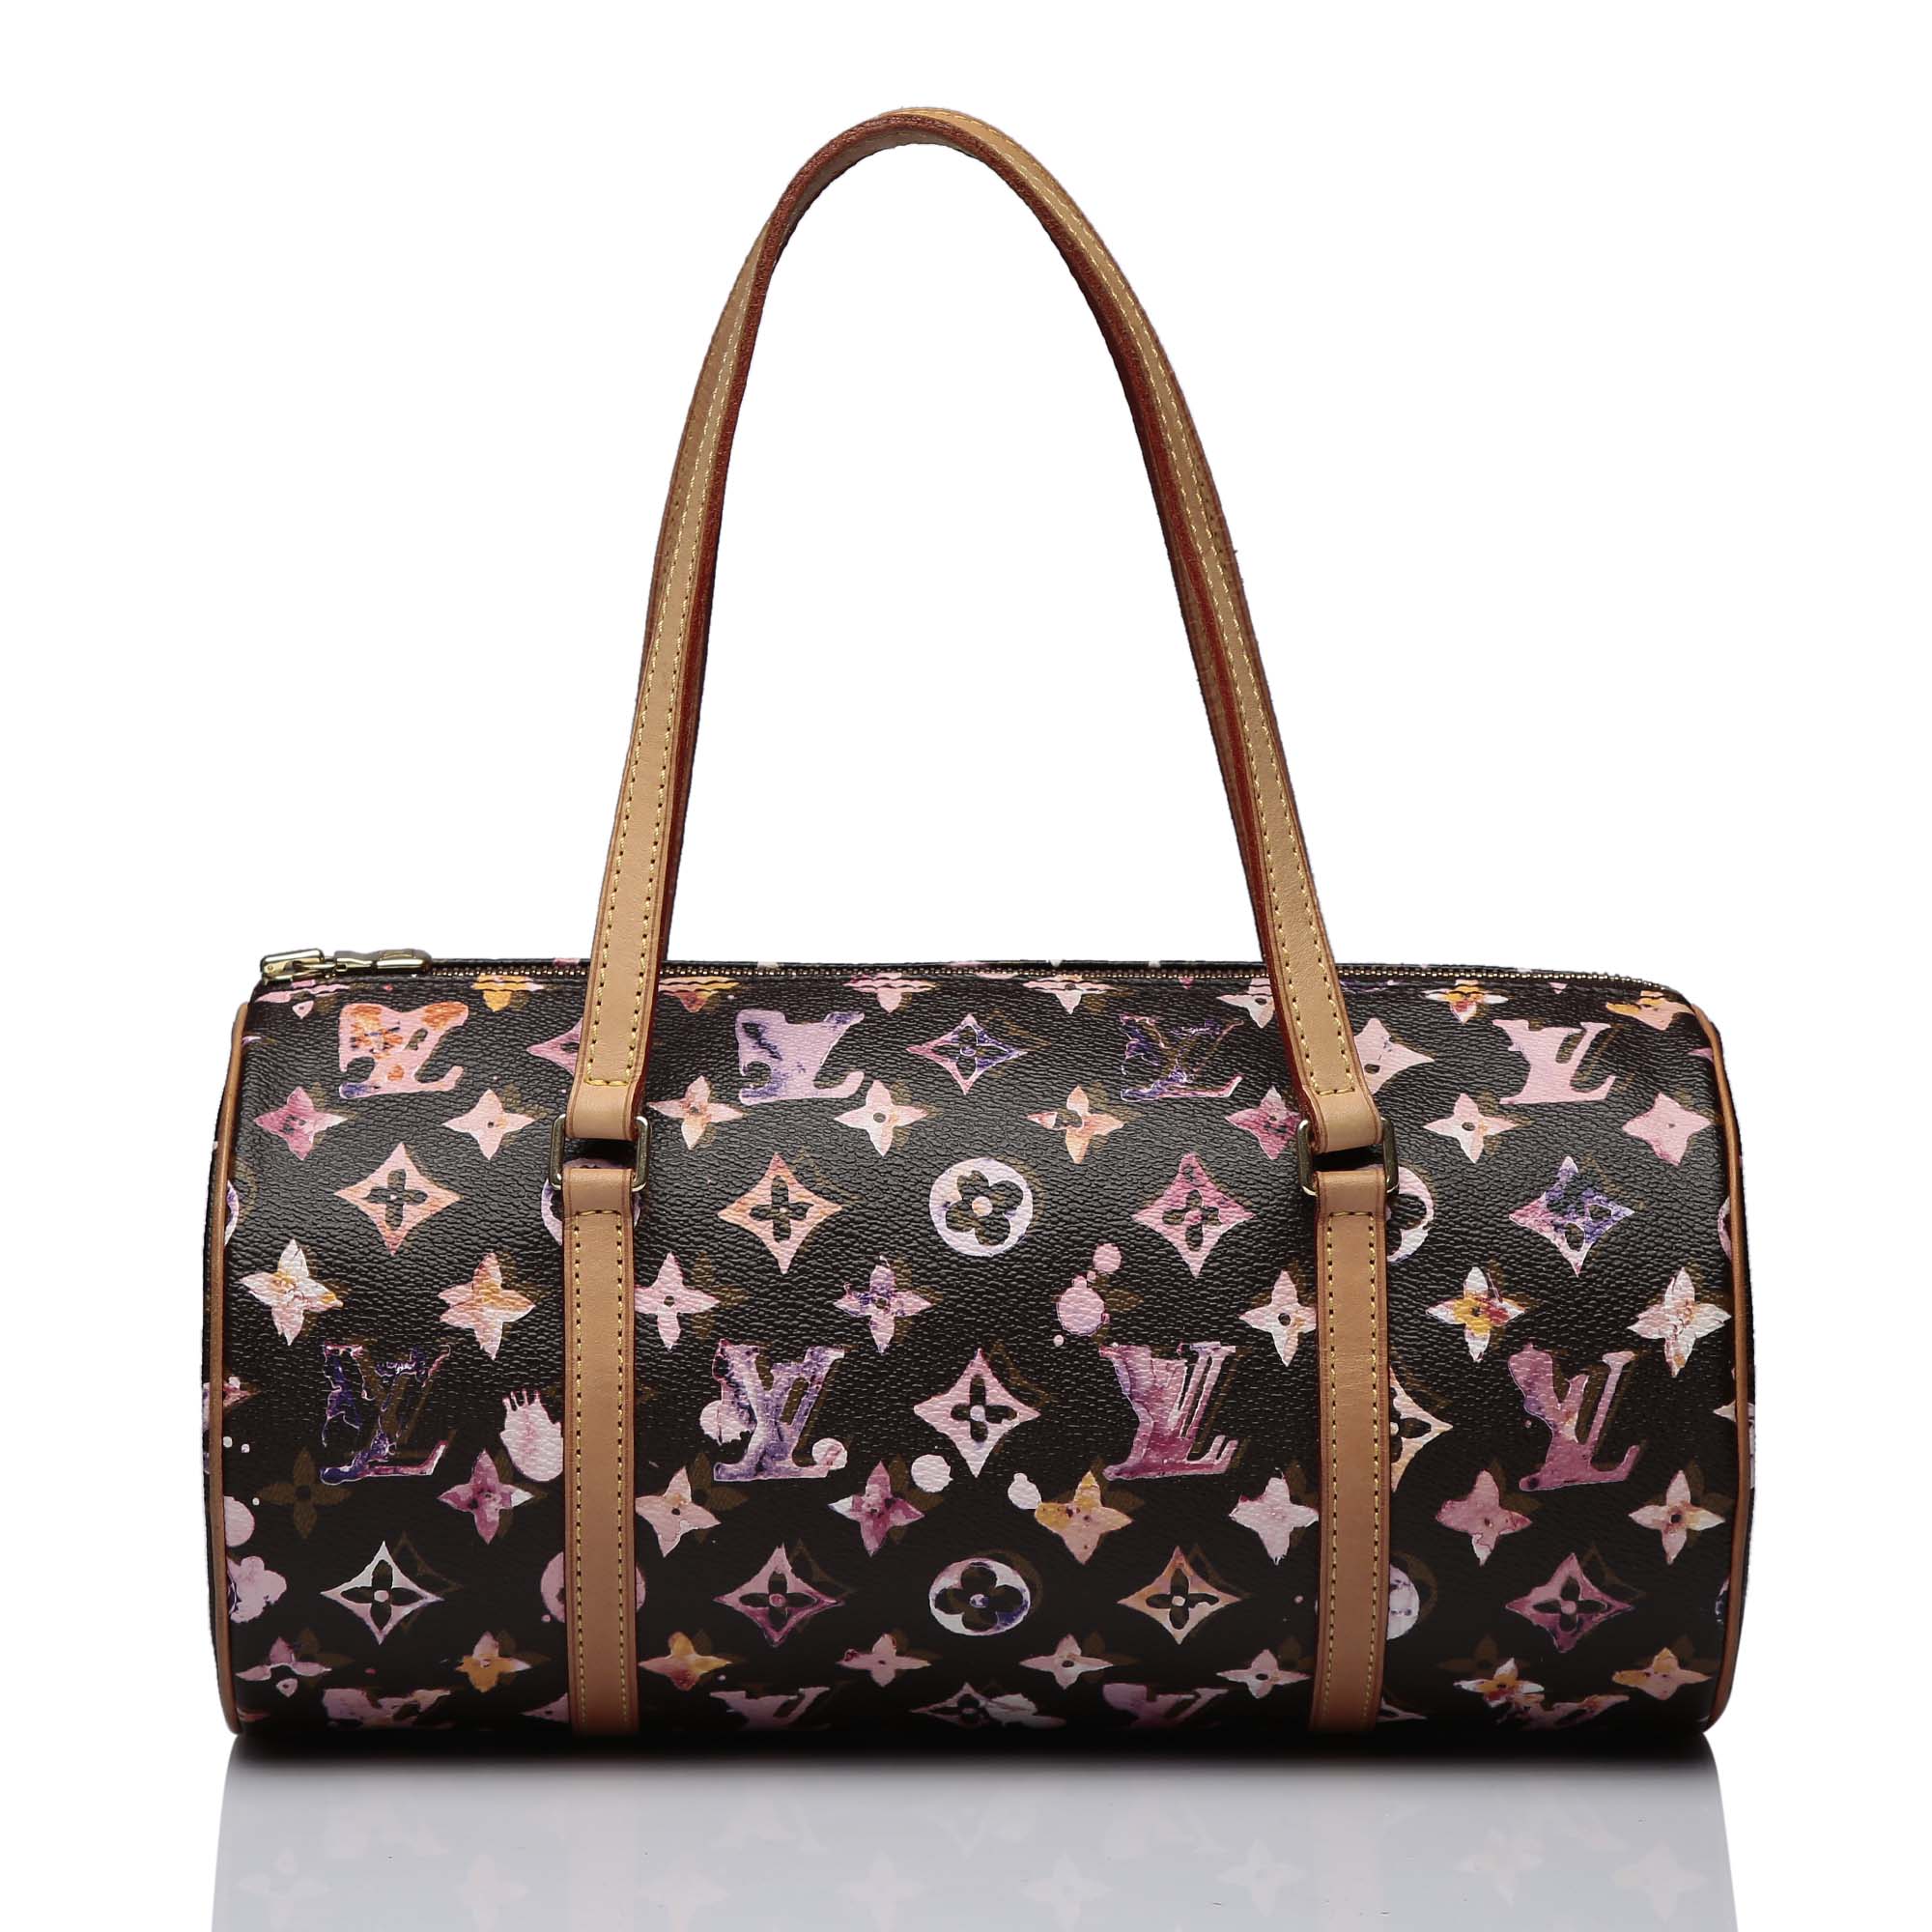 Shop Authentic Vintage Handbag online India My Luxury Bargain Louis Vuitton Water Color Papillon Limited Edition